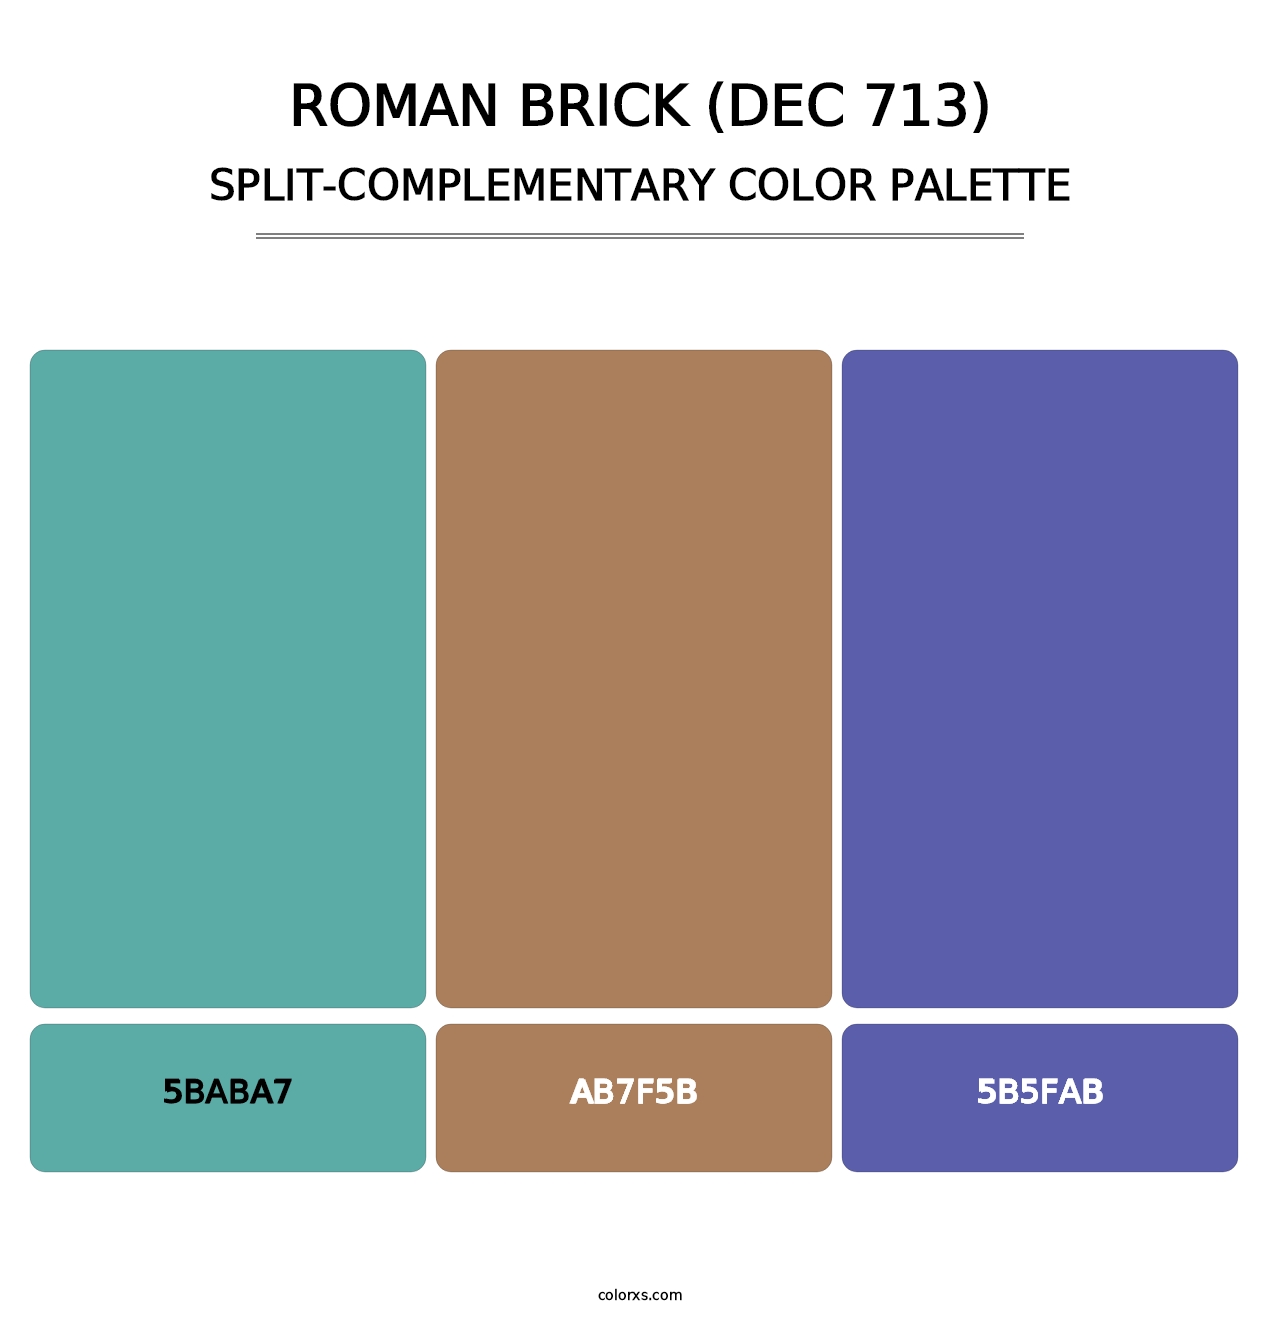 Roman Brick (DEC 713) - Split-Complementary Color Palette